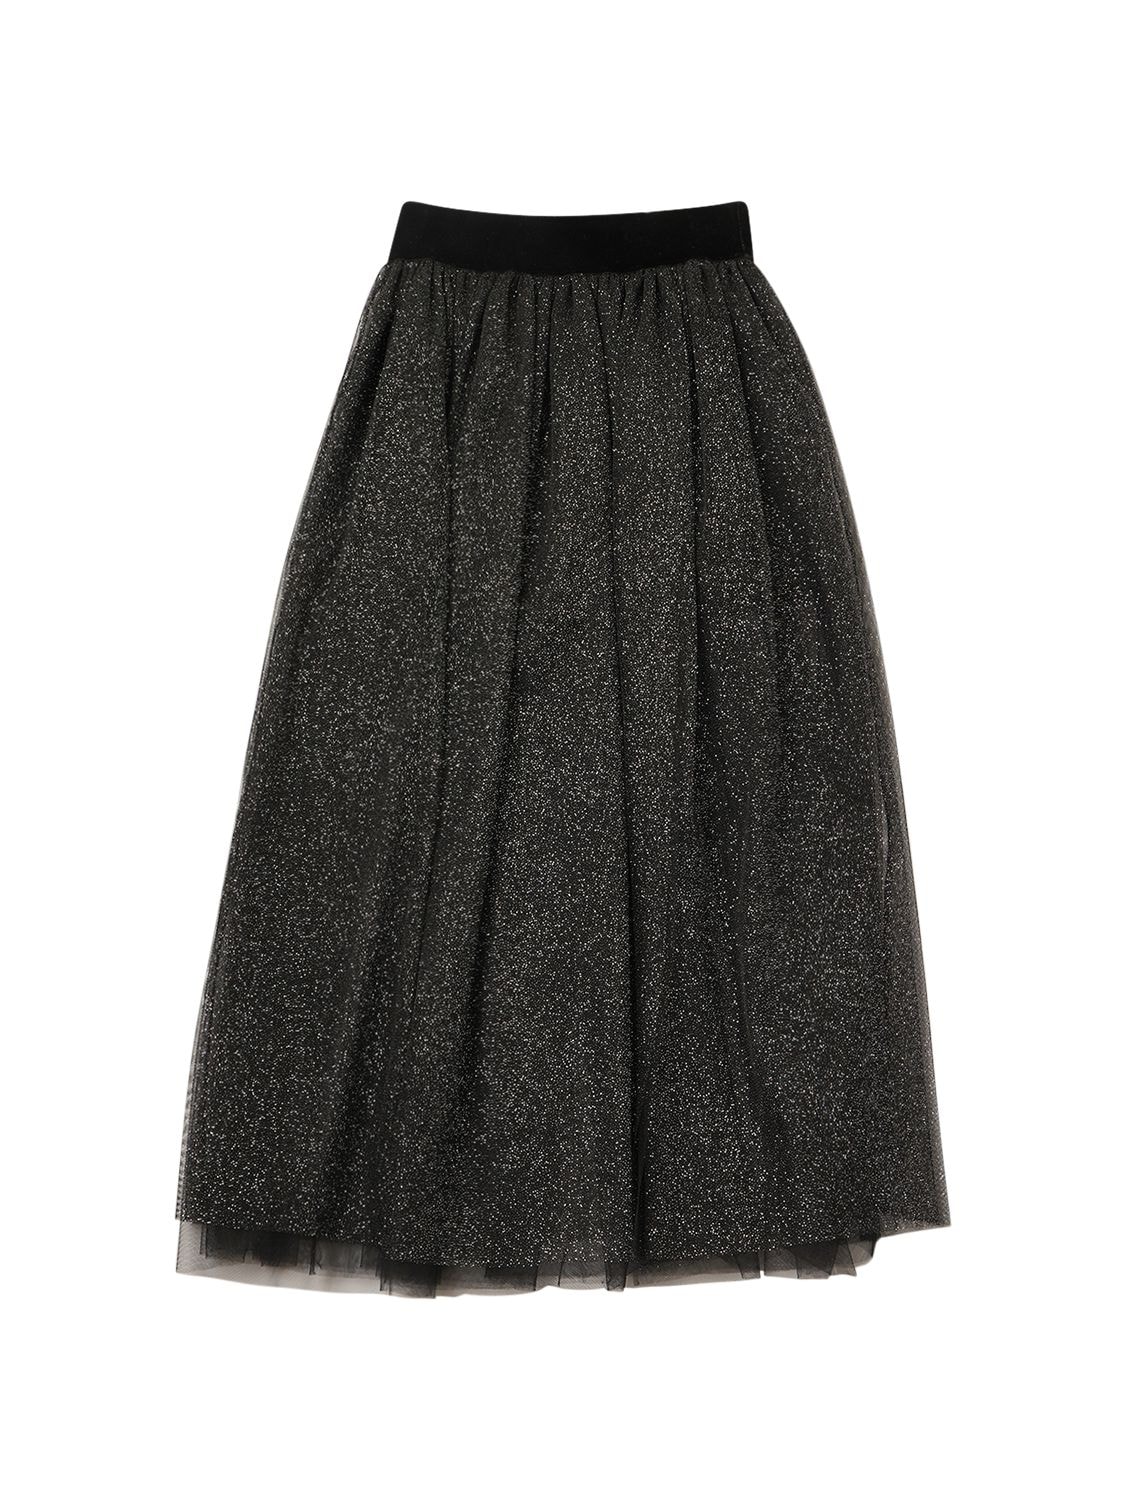 Image of Glittered Tulle Long Skirt